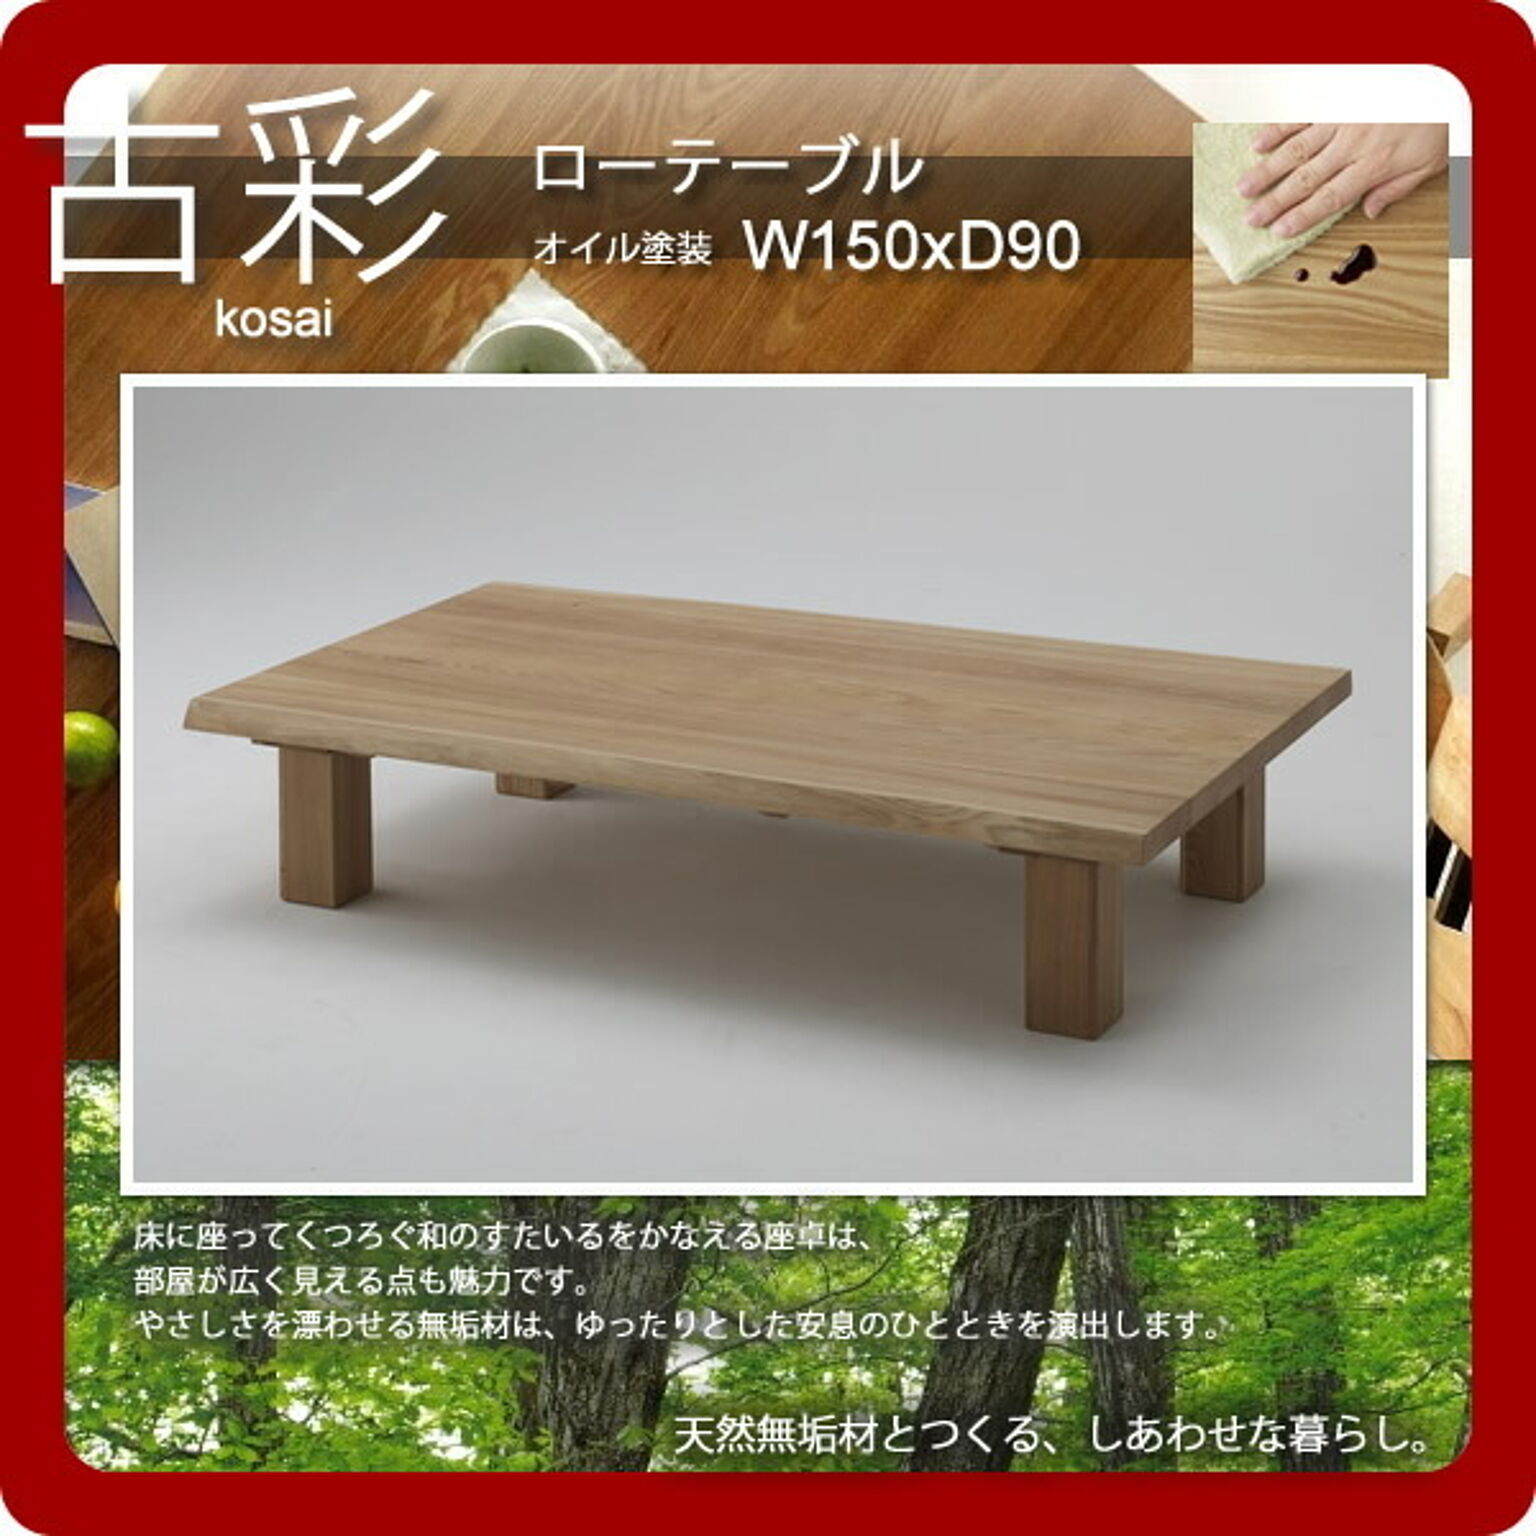 人にも環境にもやさしい家具シリーズ【古彩】★ローテーブルKO-Z150オイル塗装 W150ｘD90座卓  